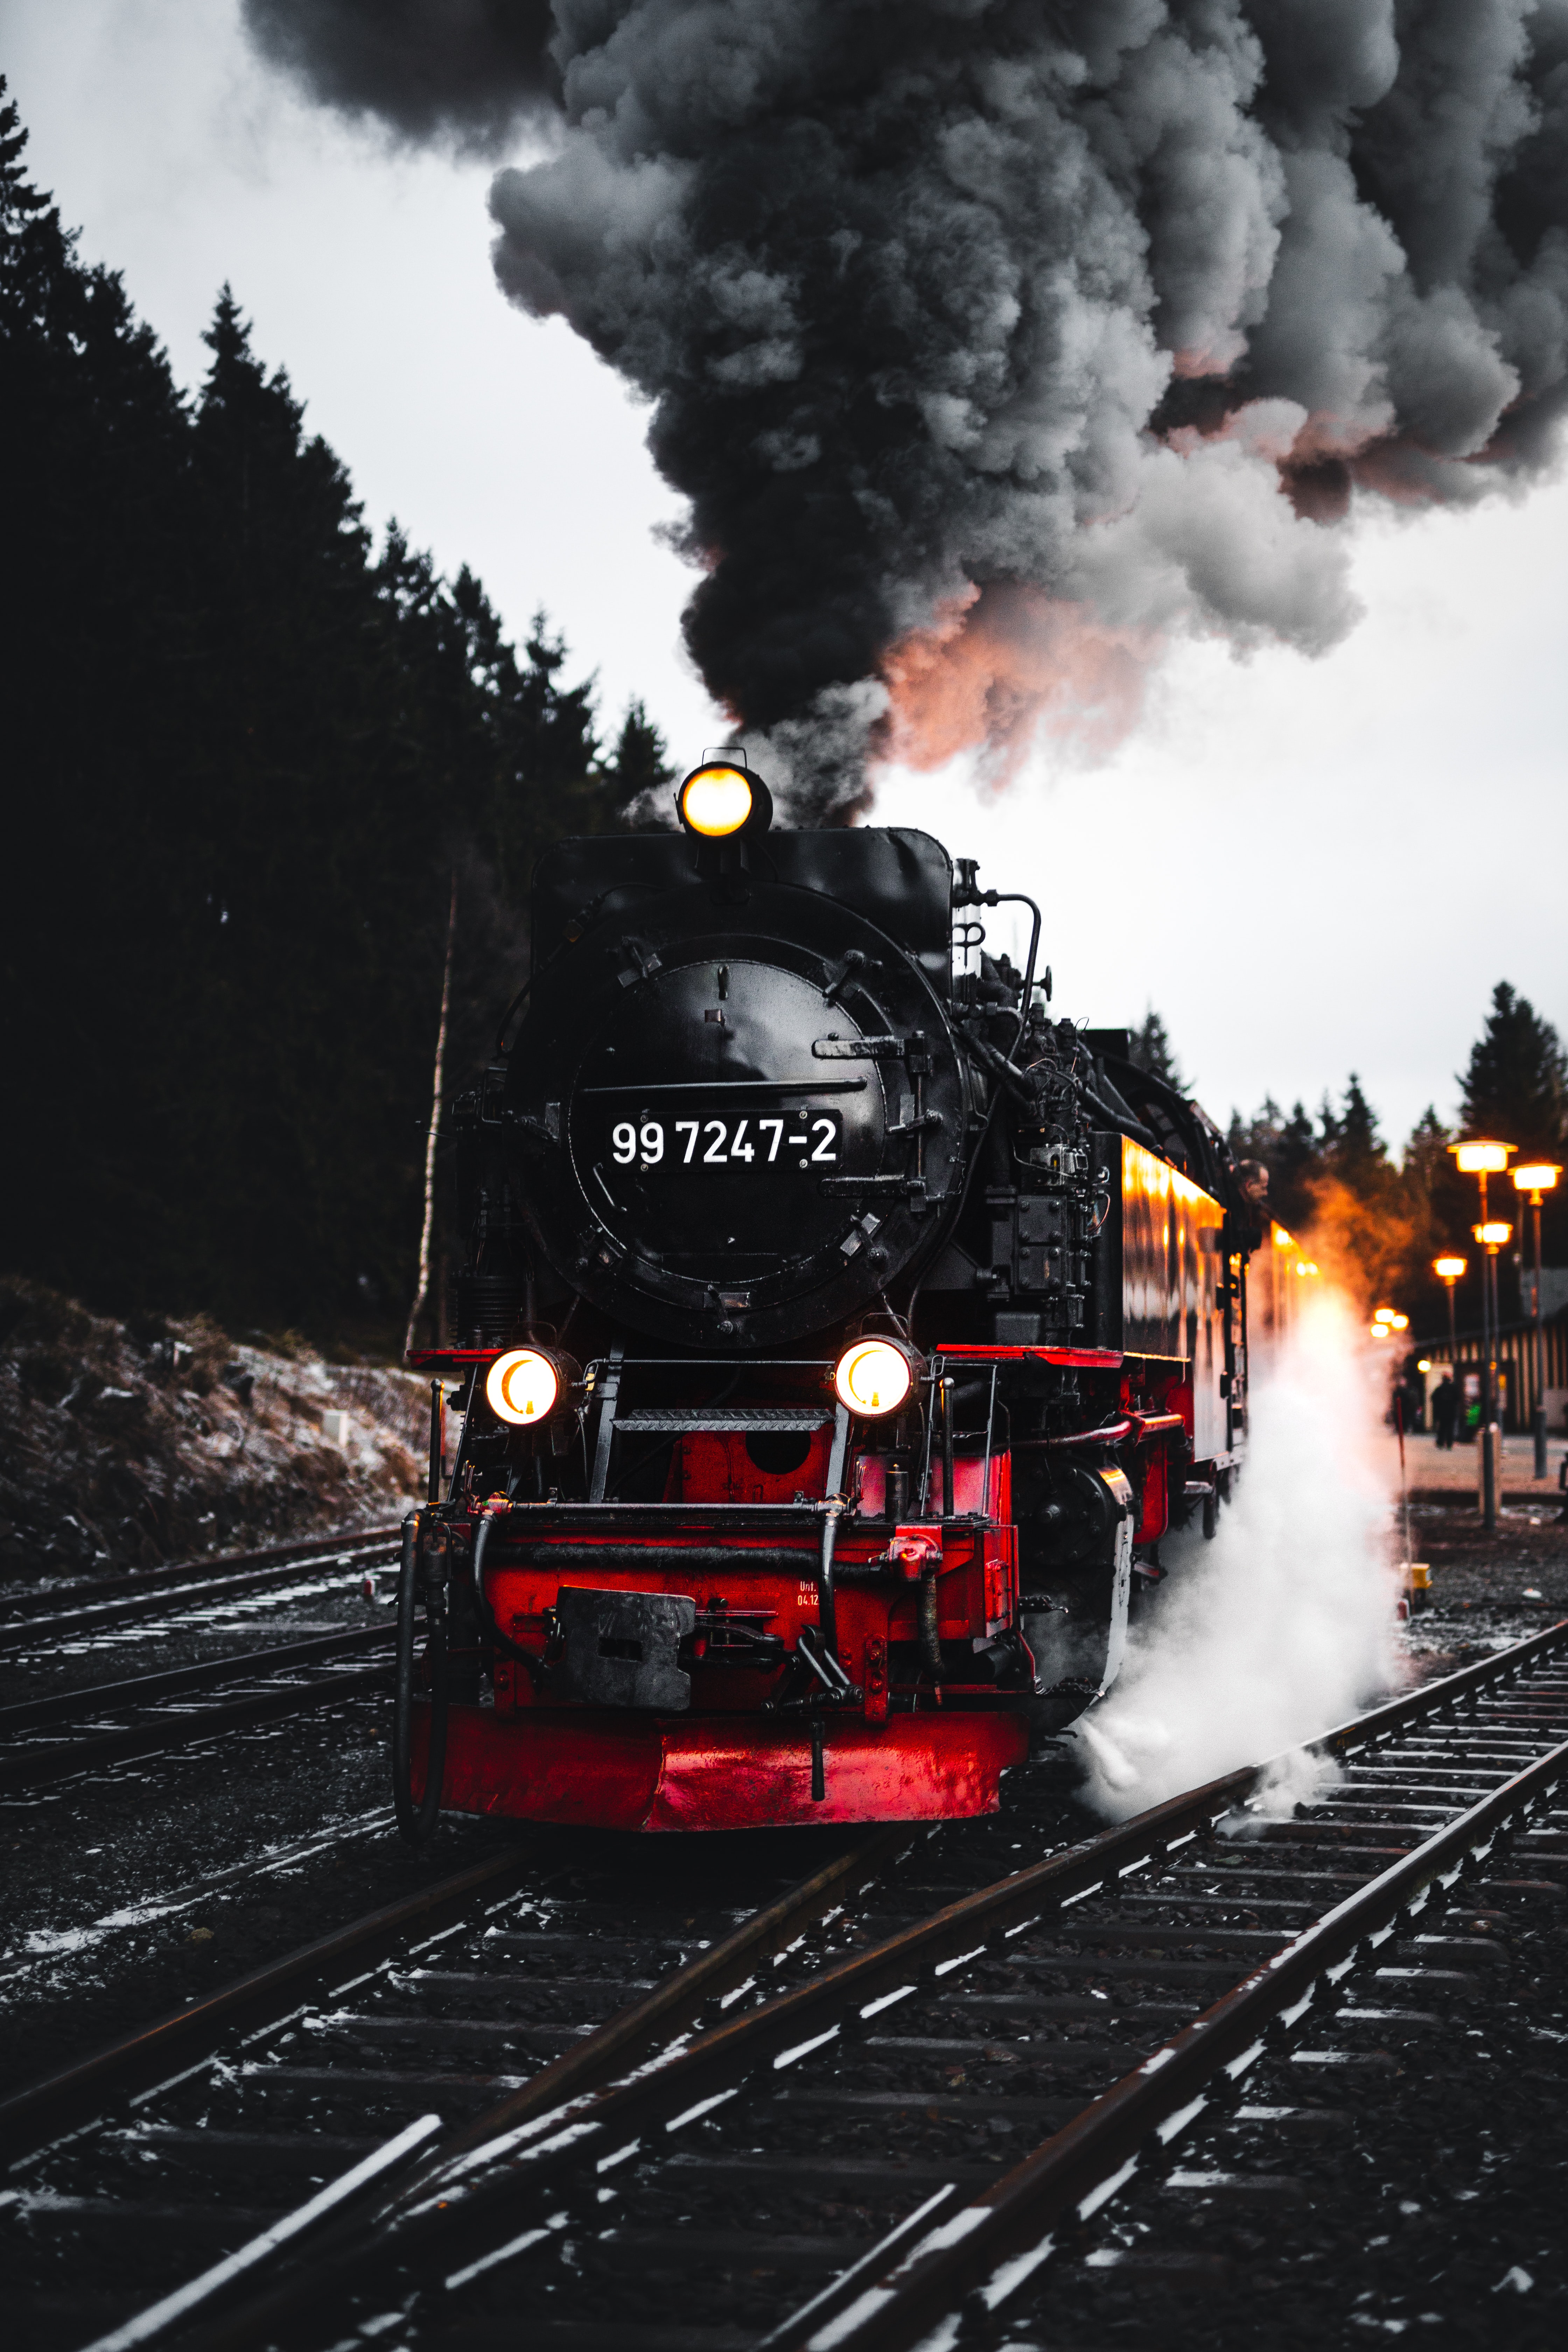 smoke, train, miscellanea, railway, trees, miscellaneous, rails